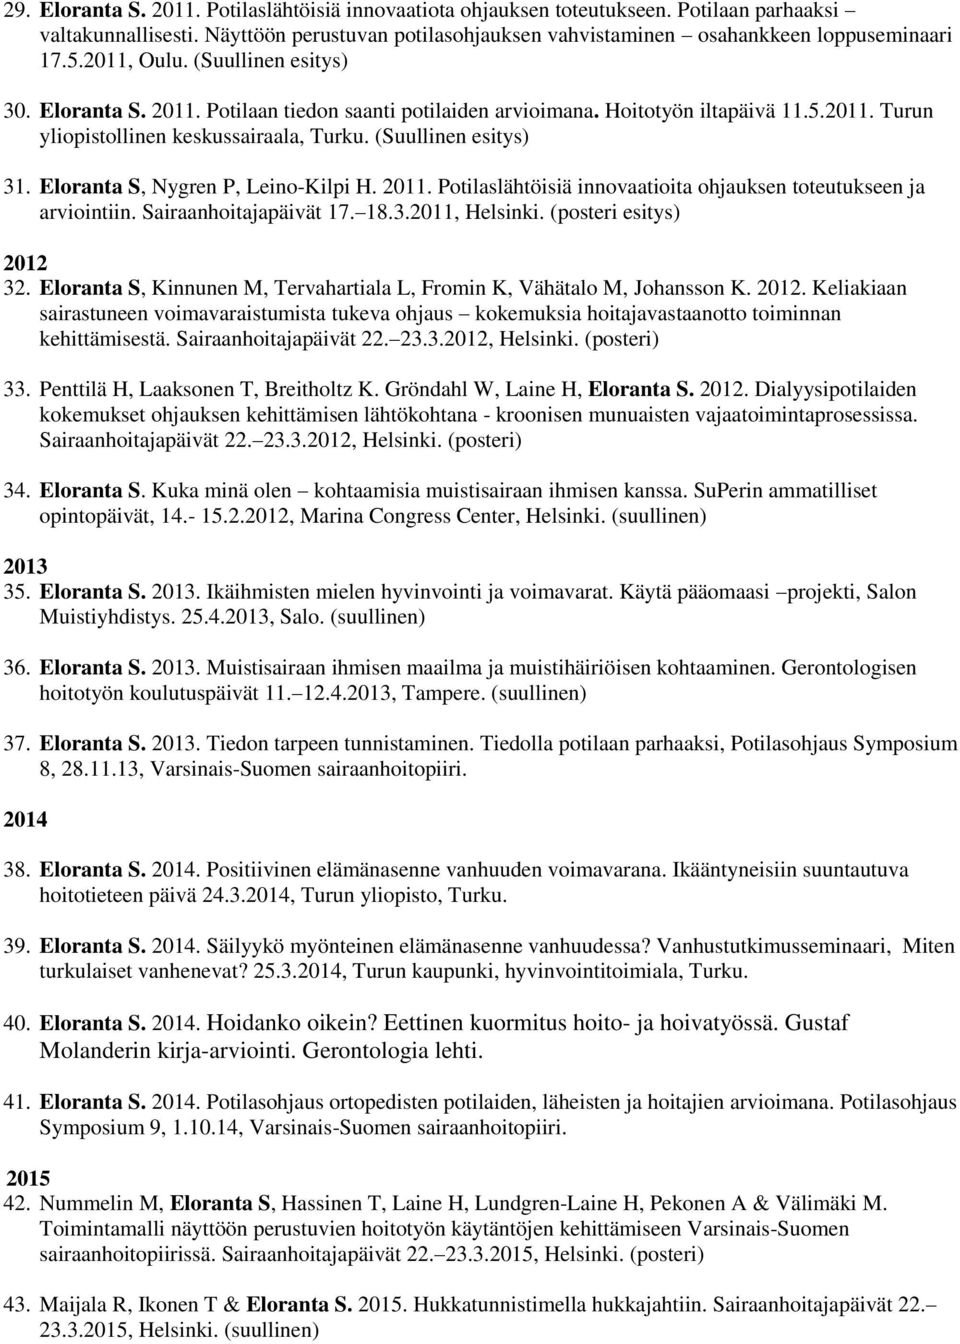 Eloranta S, Nygren P, Leino-Kilpi H. 2011. Potilaslähtöisiä innovaatioita ohjauksen toteutukseen ja arviointiin. Sairaanhoitajapäivät 17. 18.3.2011, Helsinki. (posteri esitys) 2012 32.